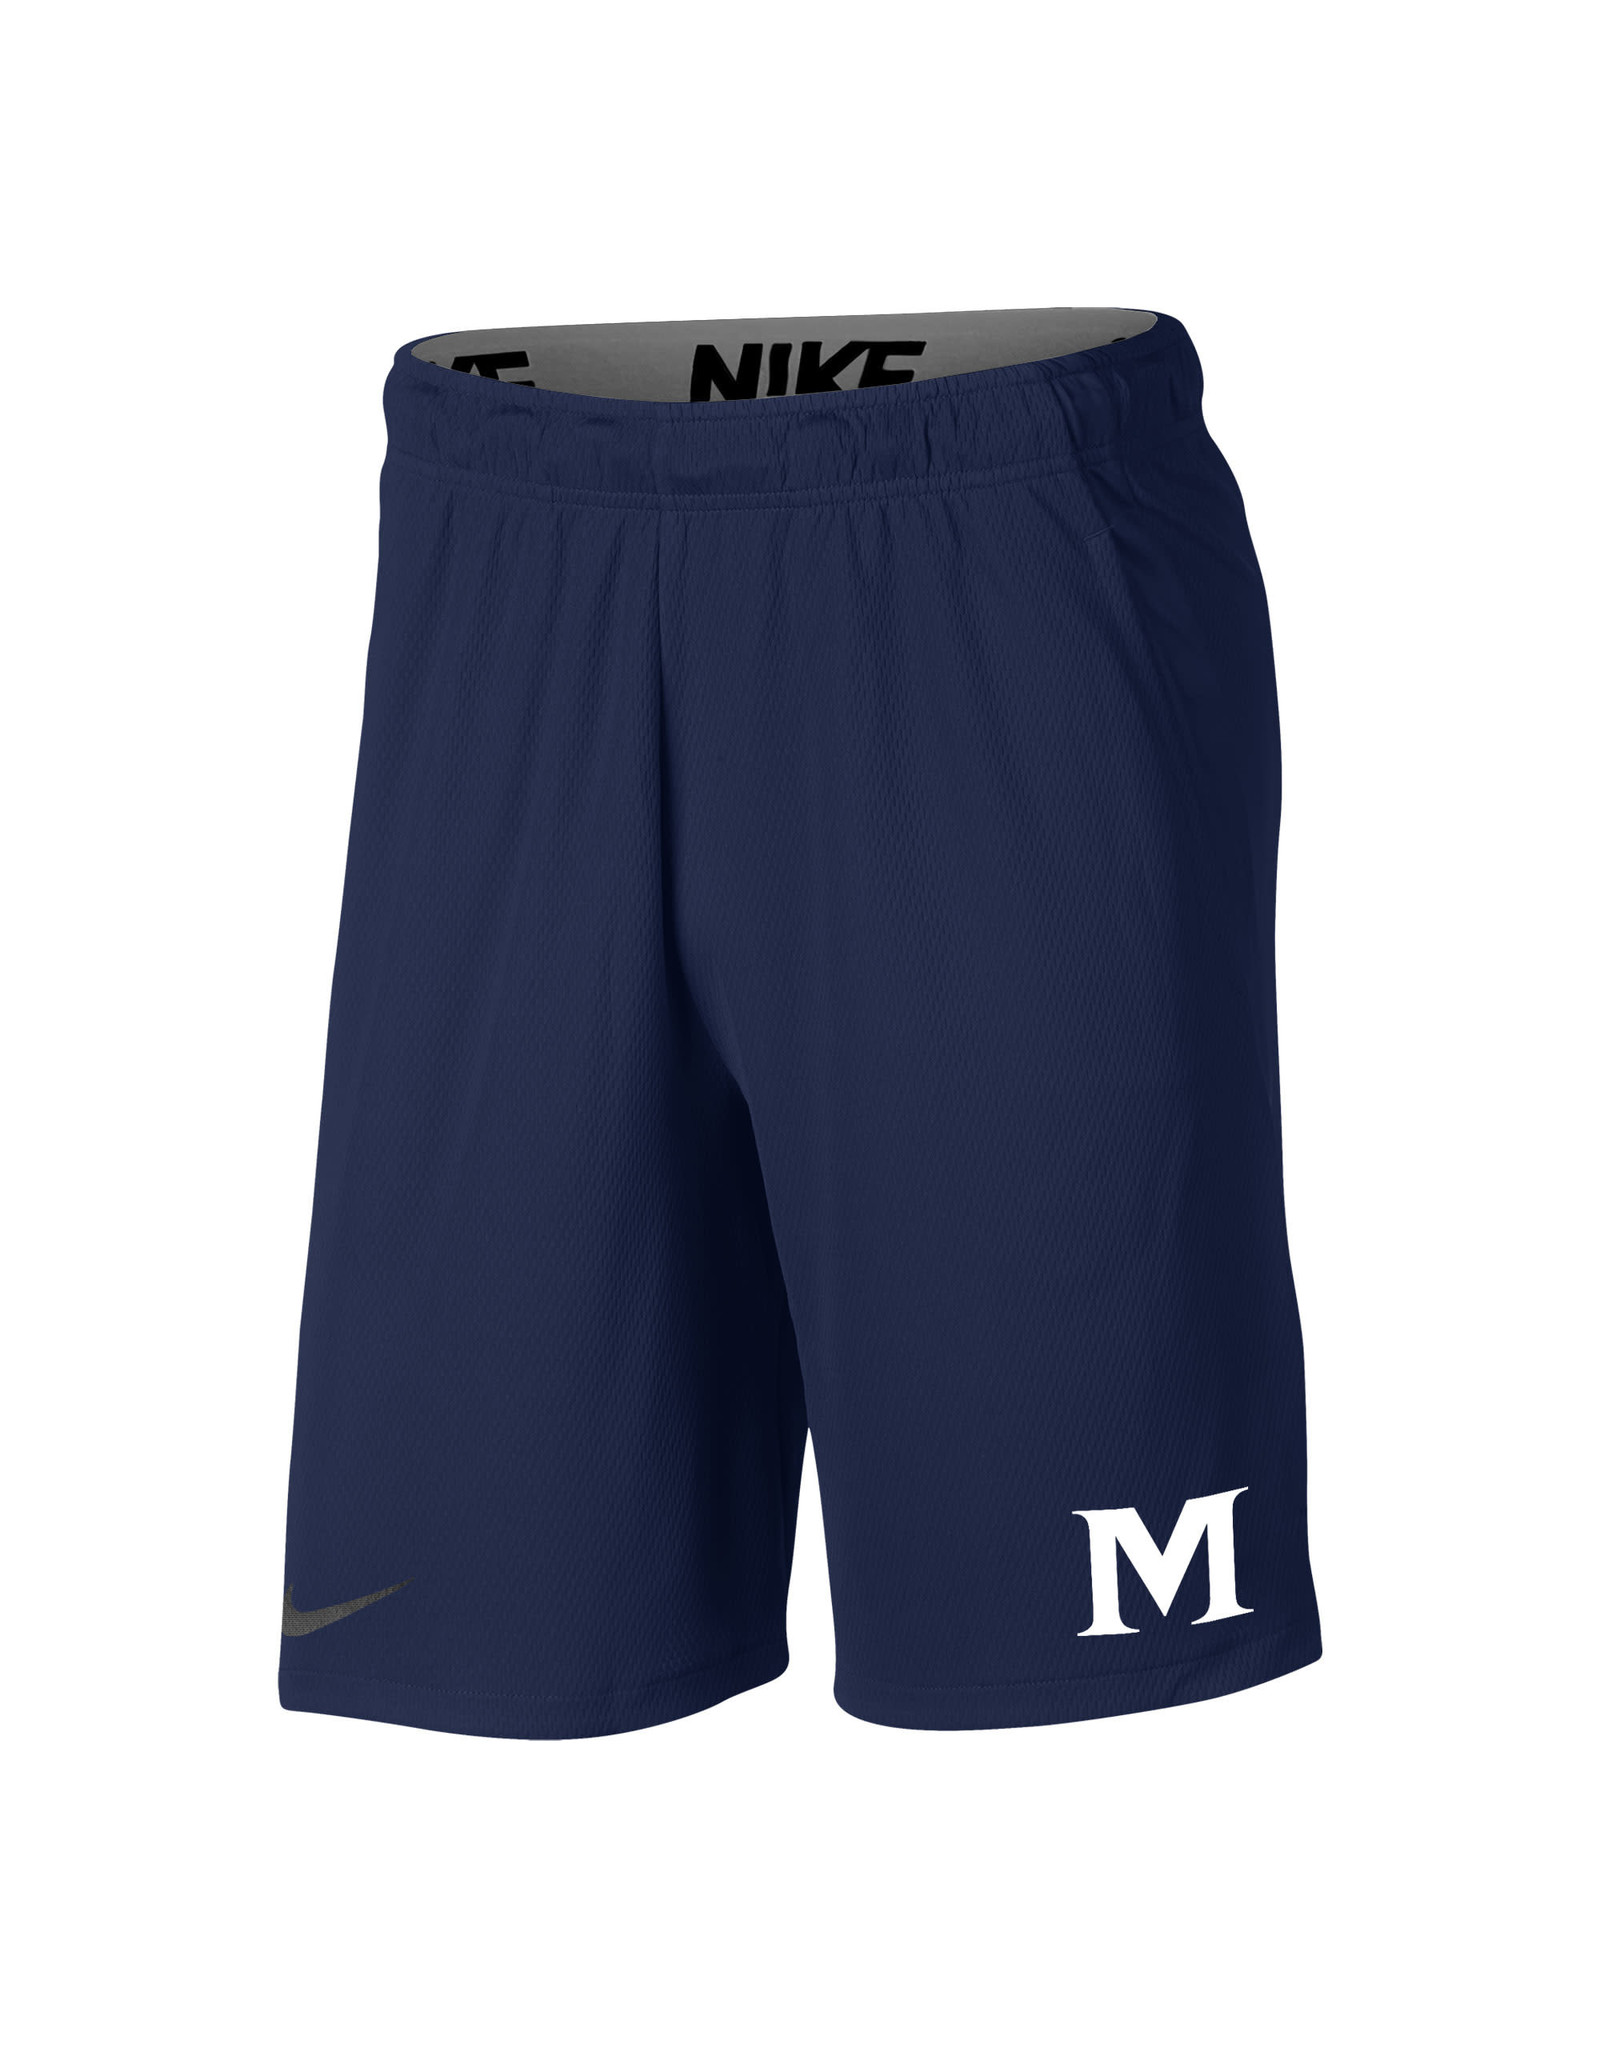 NIKE Nike Men's Navy Hype Short